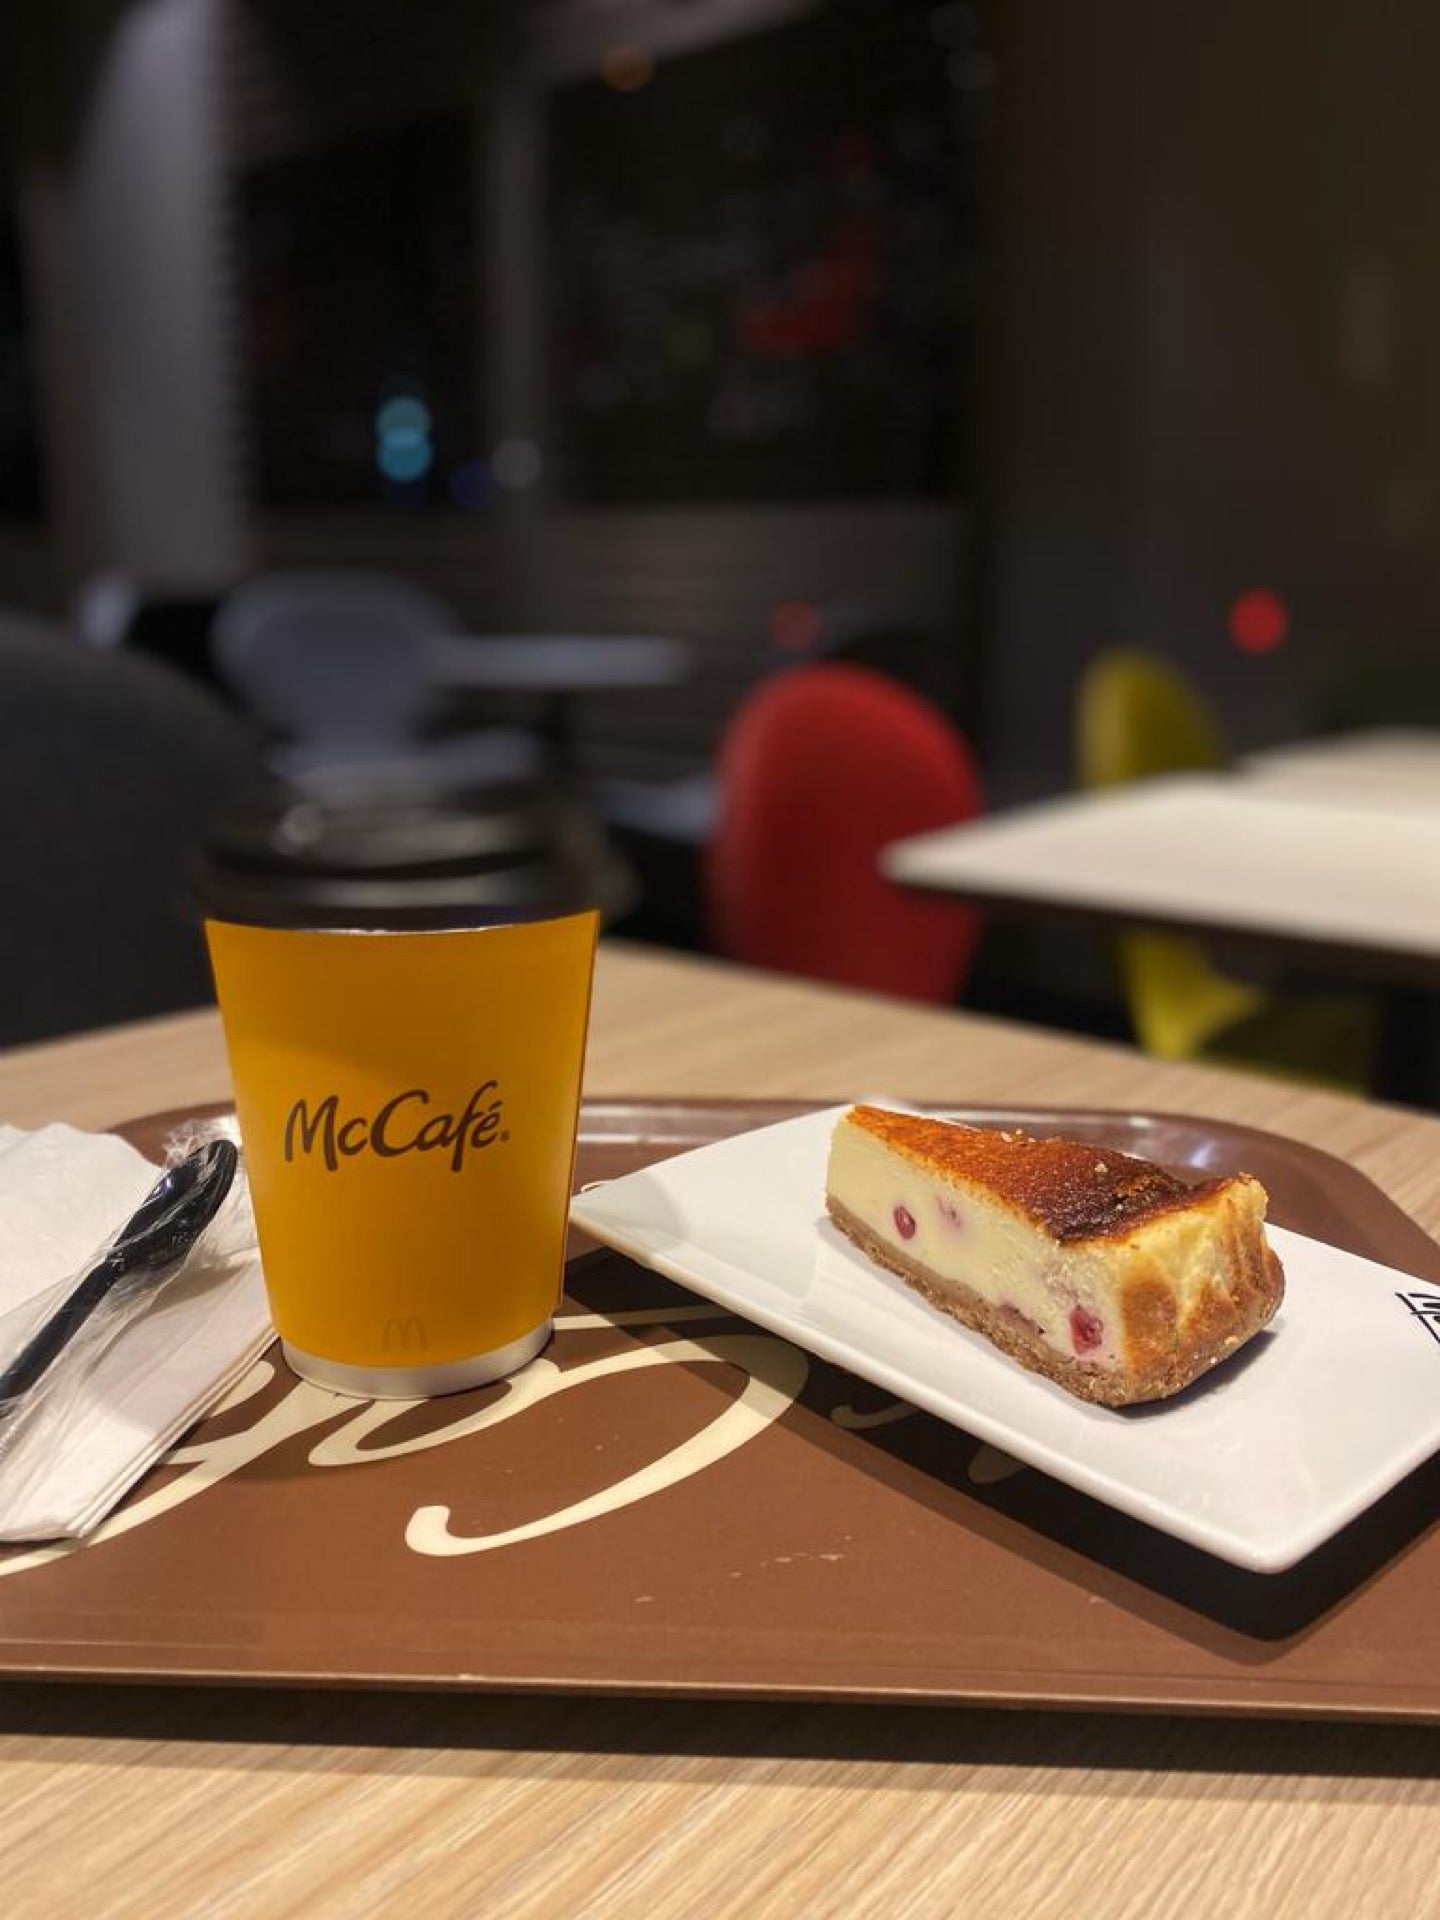 McDonald's Cafe (ماكدونالدز كافيه)